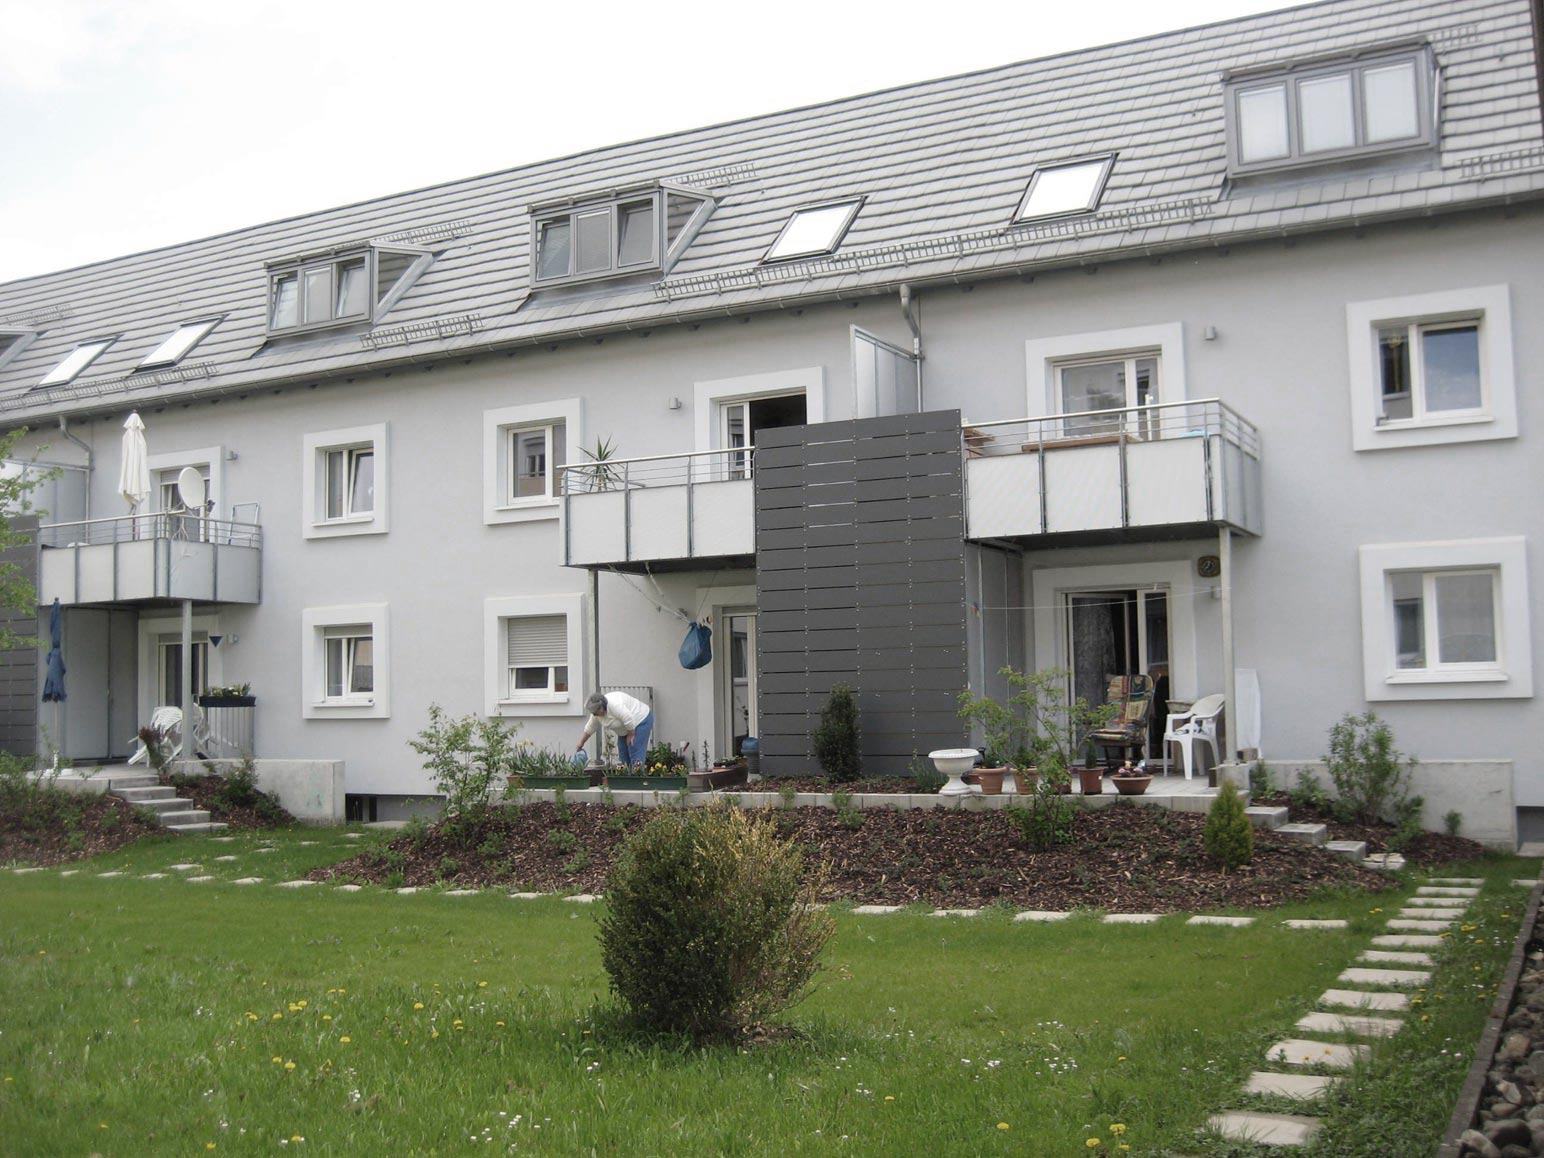 Energetische Sanierung Häselerweg 2–20 in Schwäbisch Gmünd mit 20 Mietwohnungen